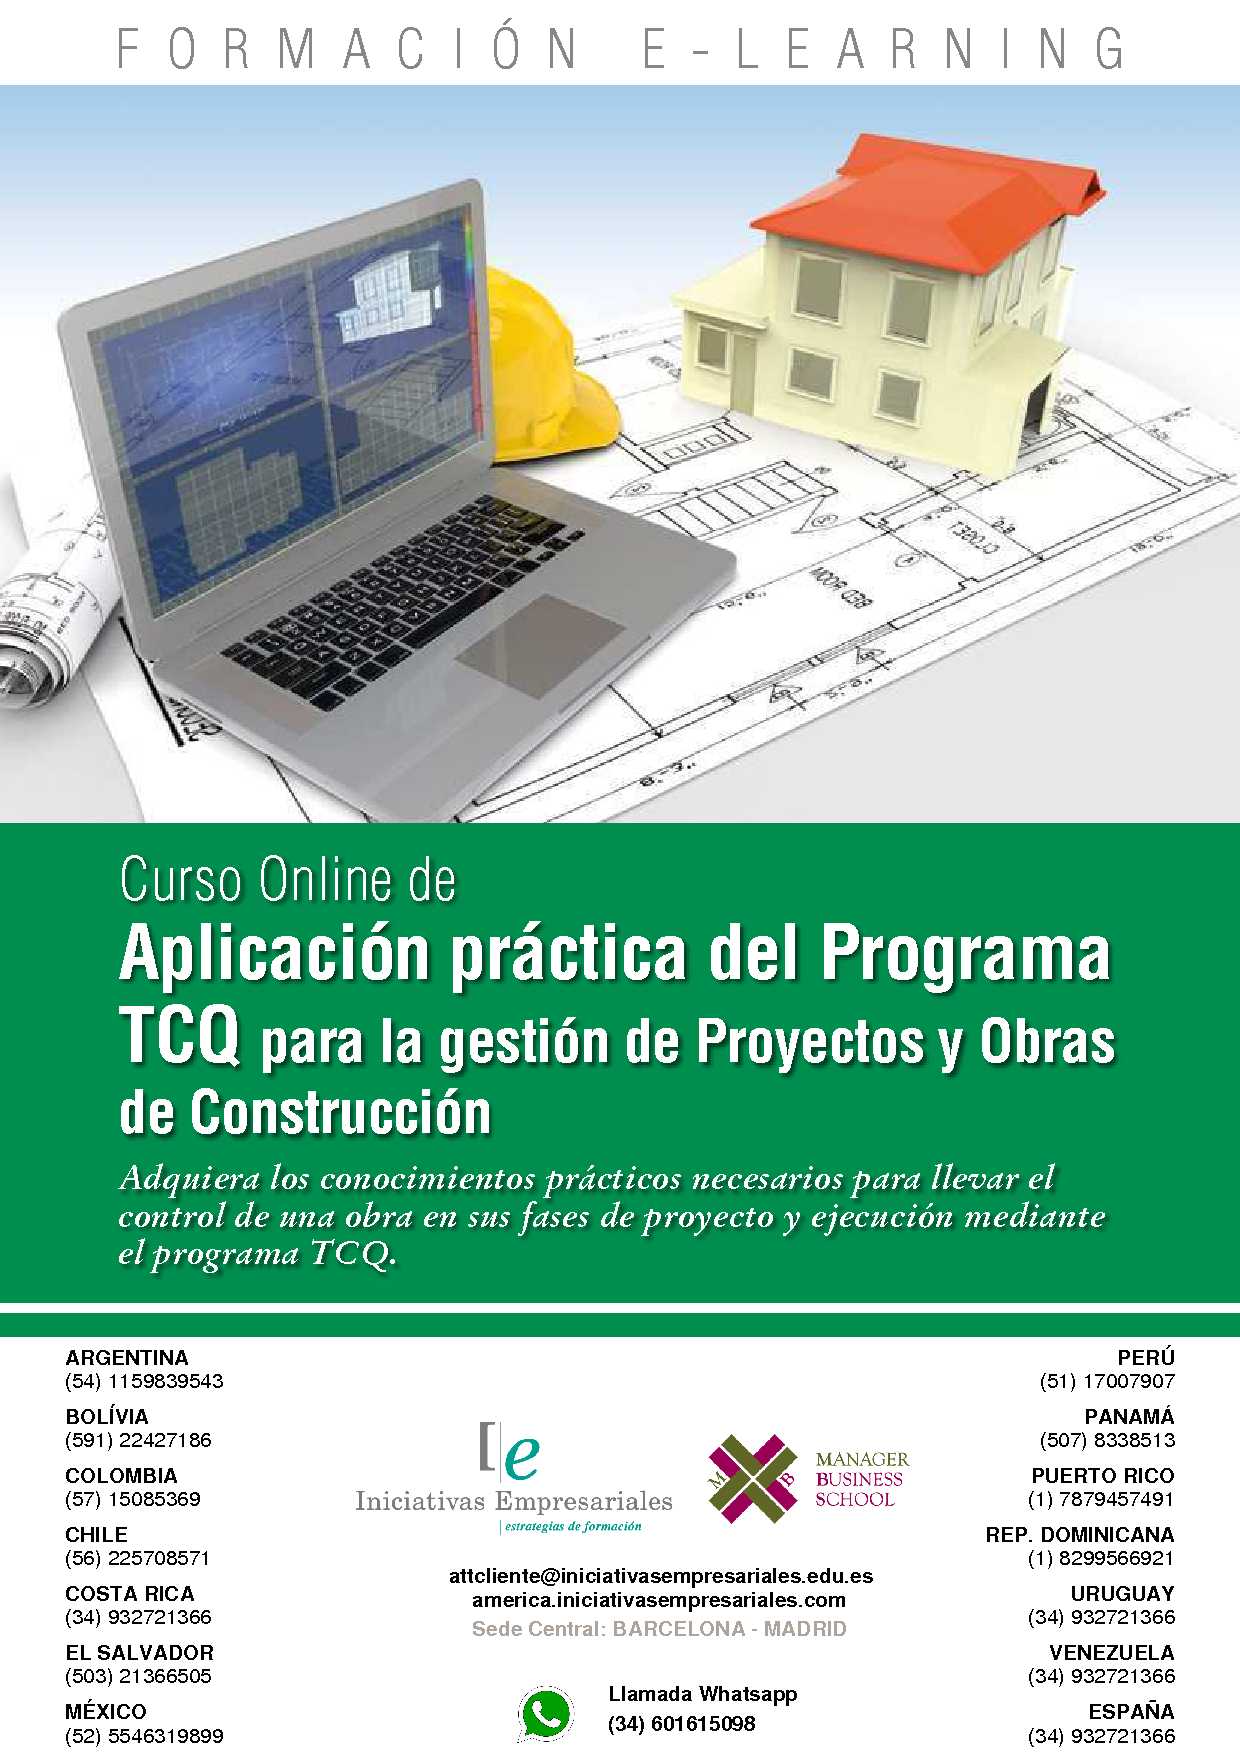 Aplicación práctica del Programa TCQ para la gestión de Proyectos y Obras de Construcción